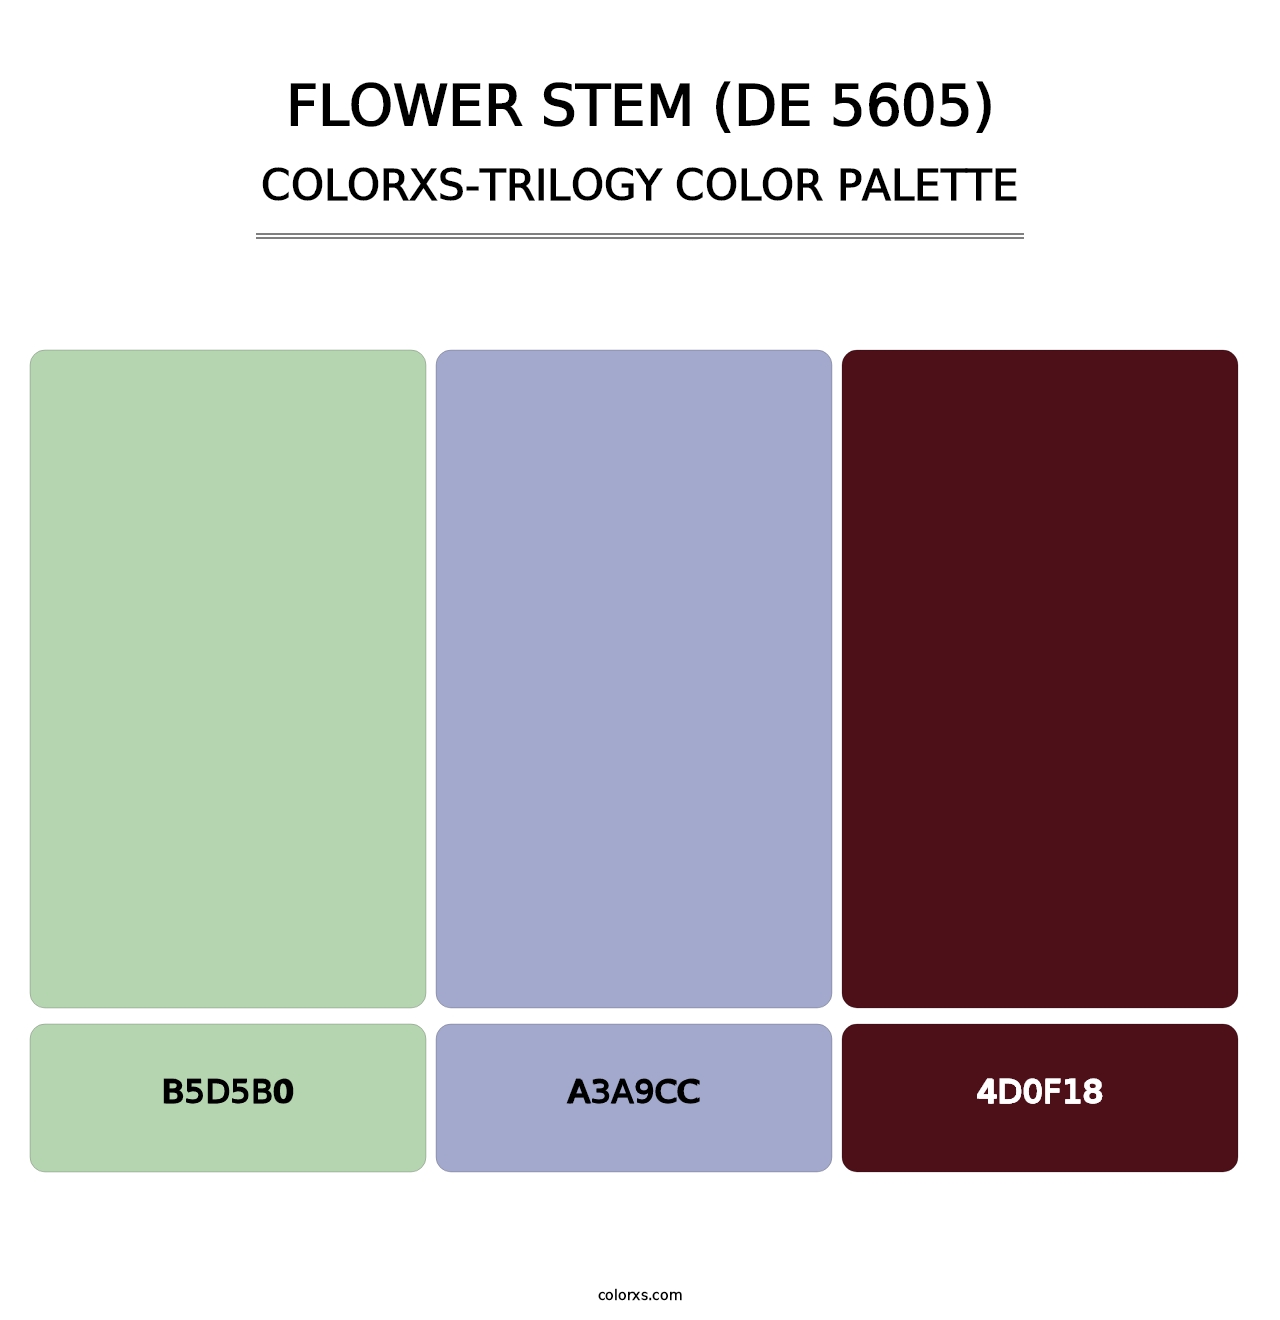 Flower Stem (DE 5605) - Colorxs Trilogy Palette